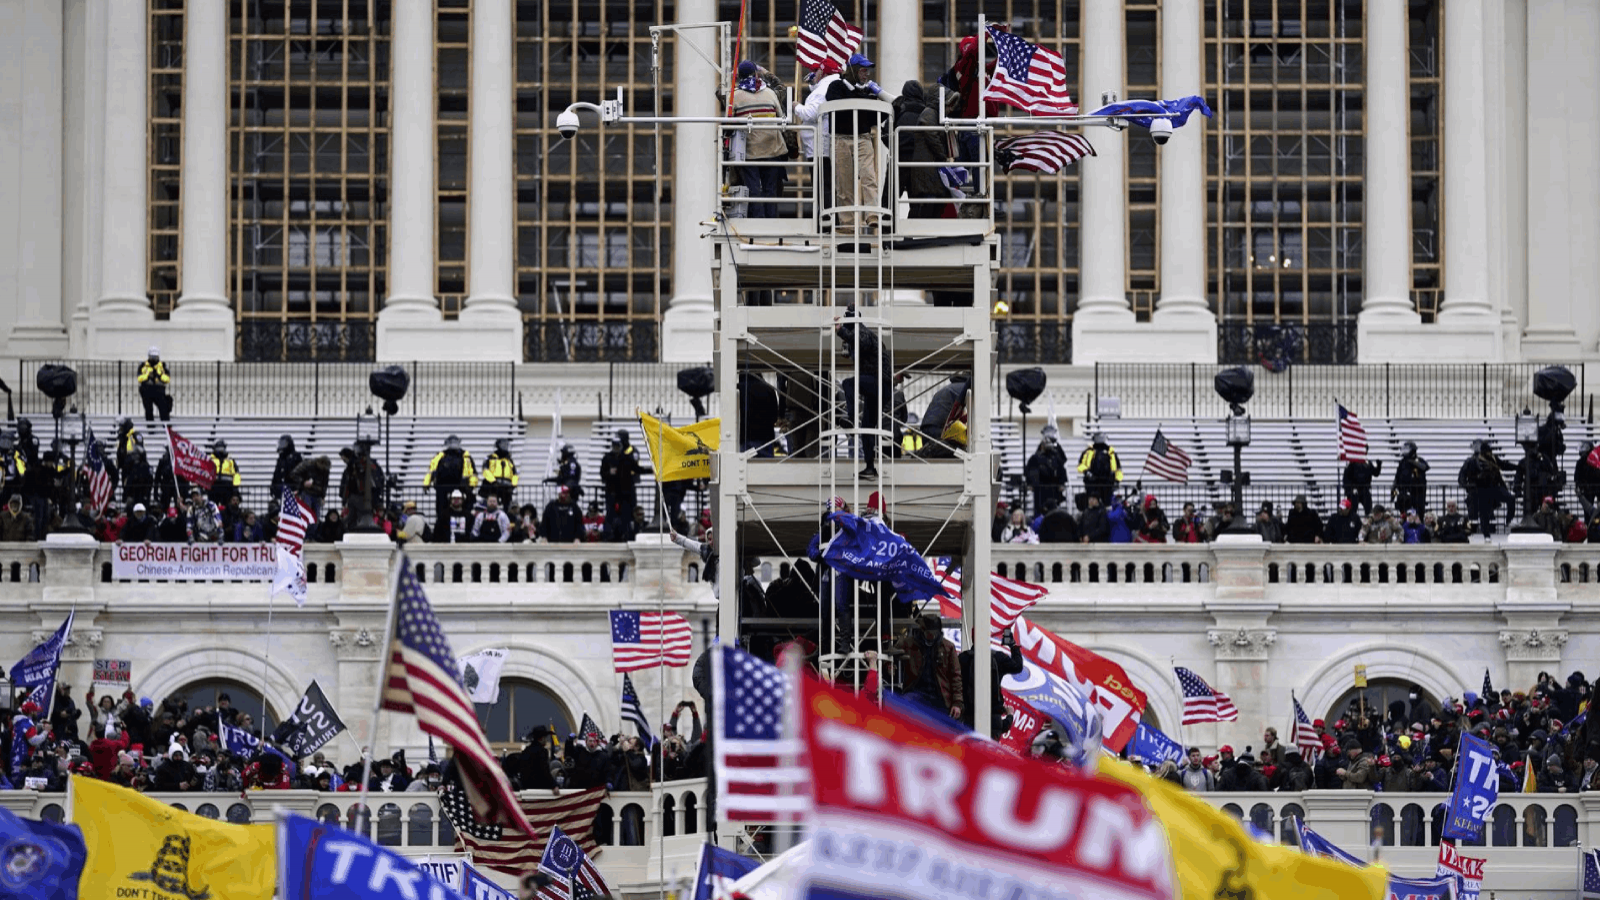 Vista de seguidores del expresidente de EE.UU. Donald Trump mientras intentan ingresar a la fuerza al Capitolio, sede del Congreso estadounidense, el 6 de enero de 2021.